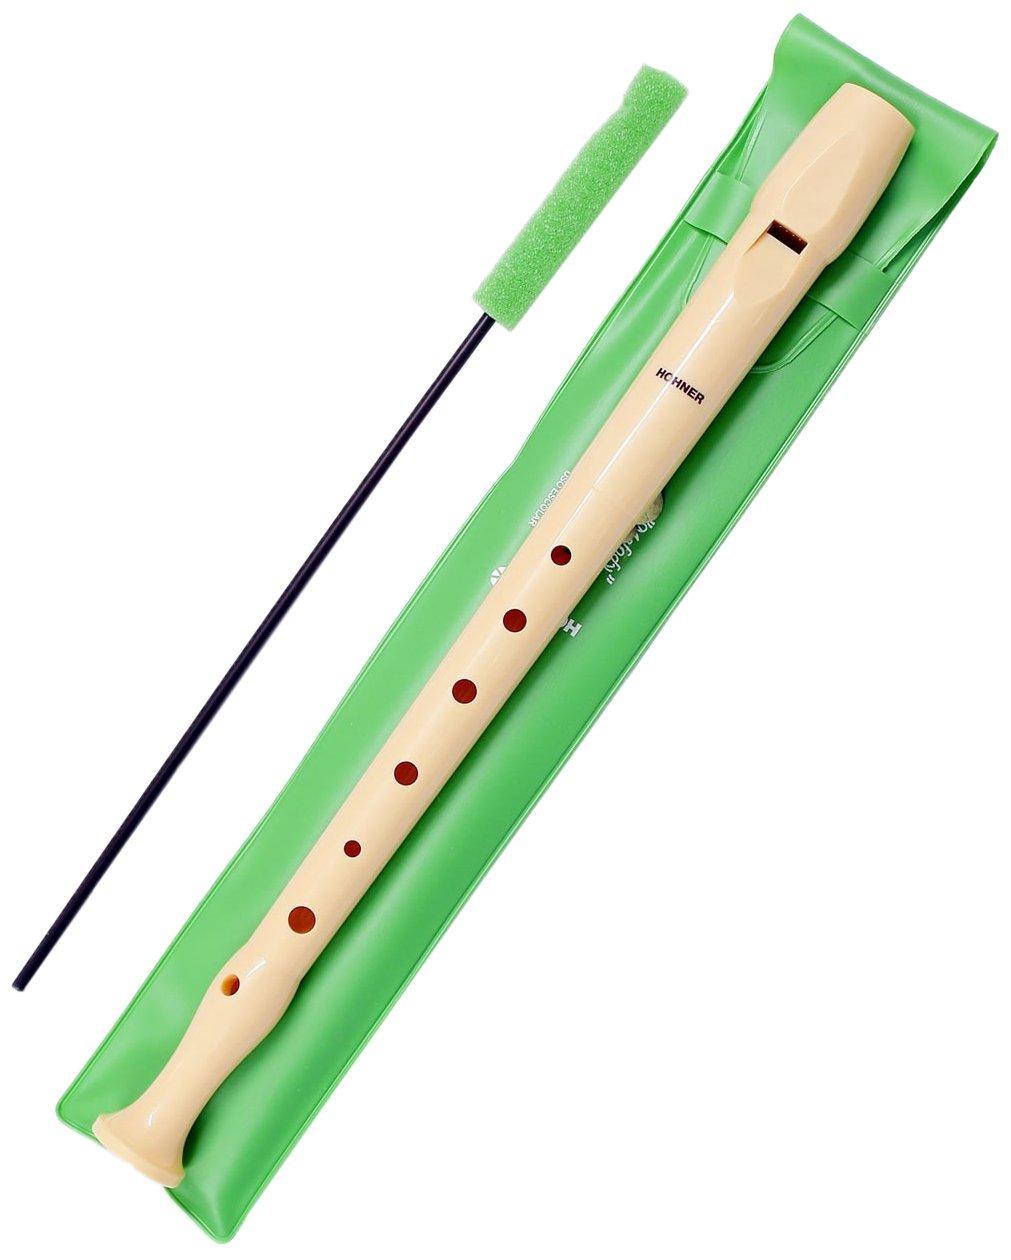 FLAUTO HOHNER ü Descrizione : Questi flauti dolci sono appositamente progettati per i bambini e i giovani principianti.